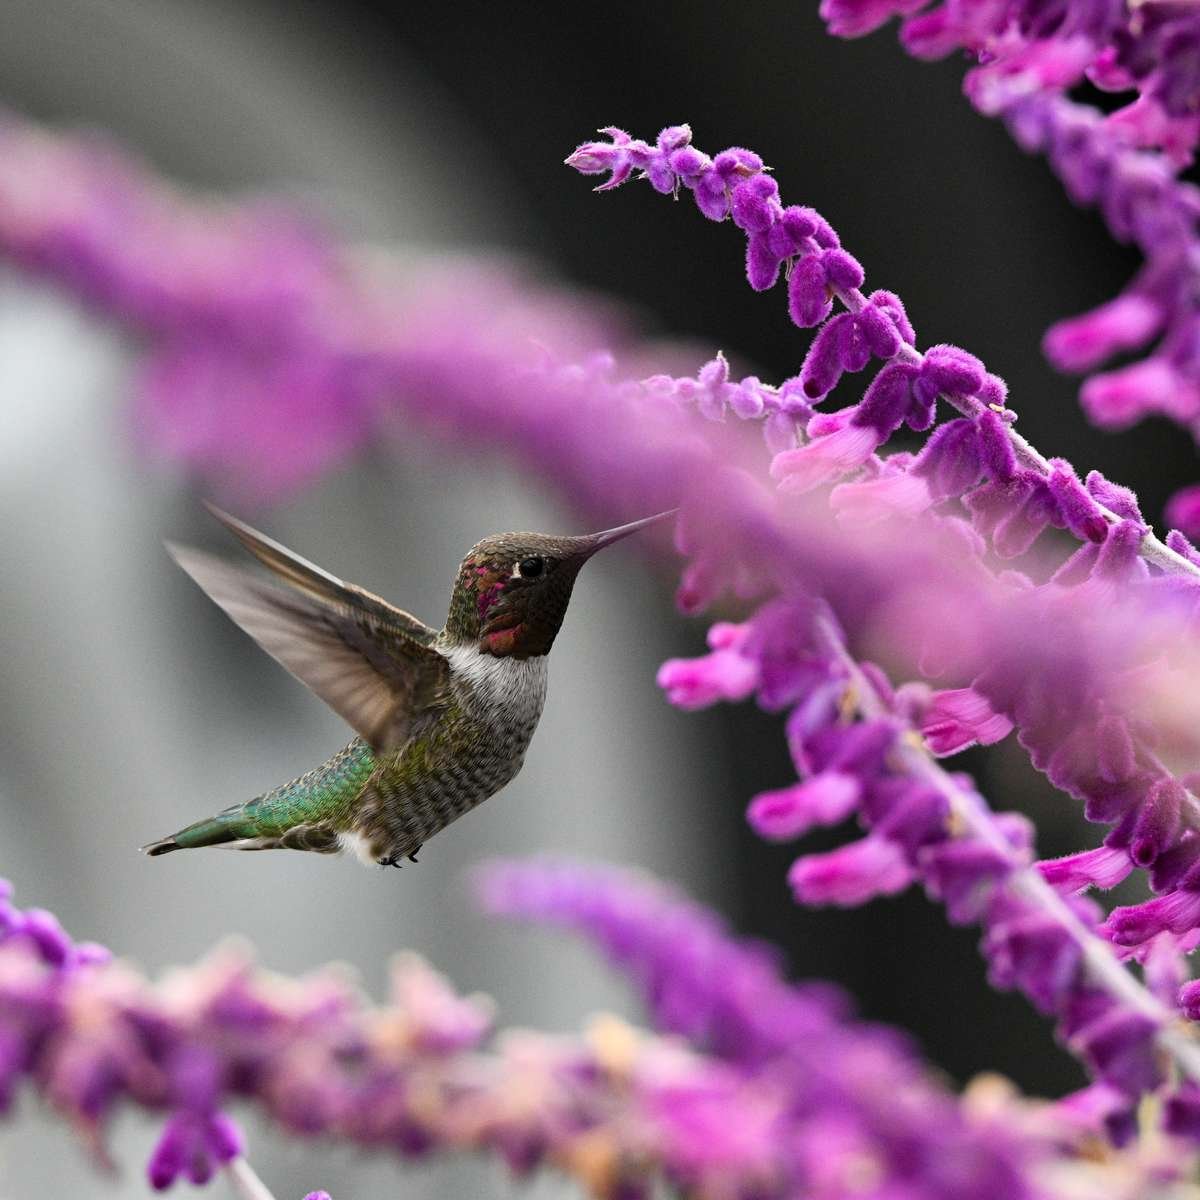 Hummingbird on Salvia flower